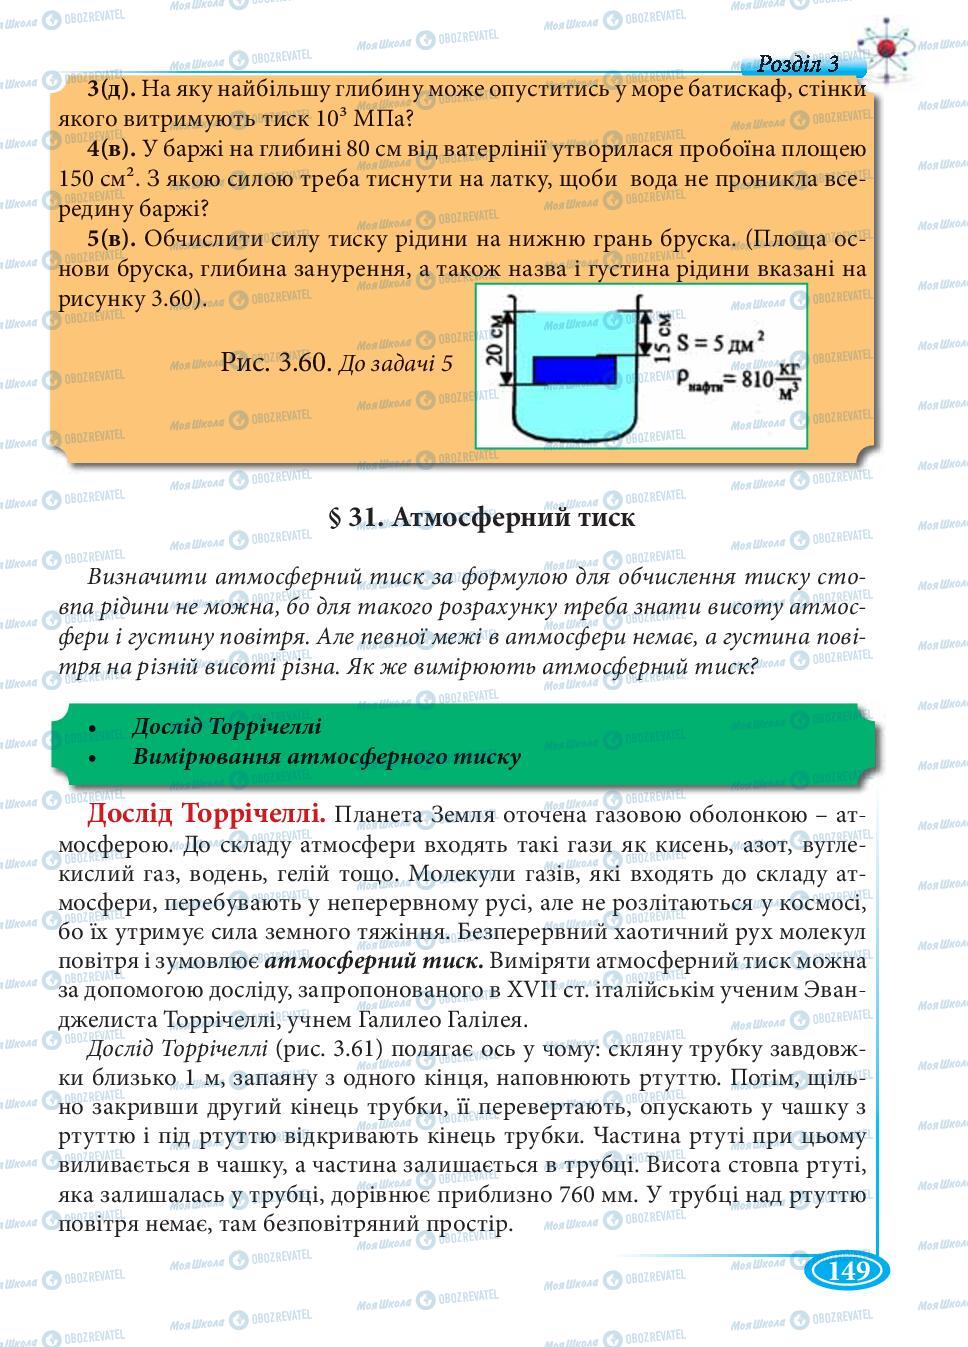 Підручники Фізика 7 клас сторінка 149